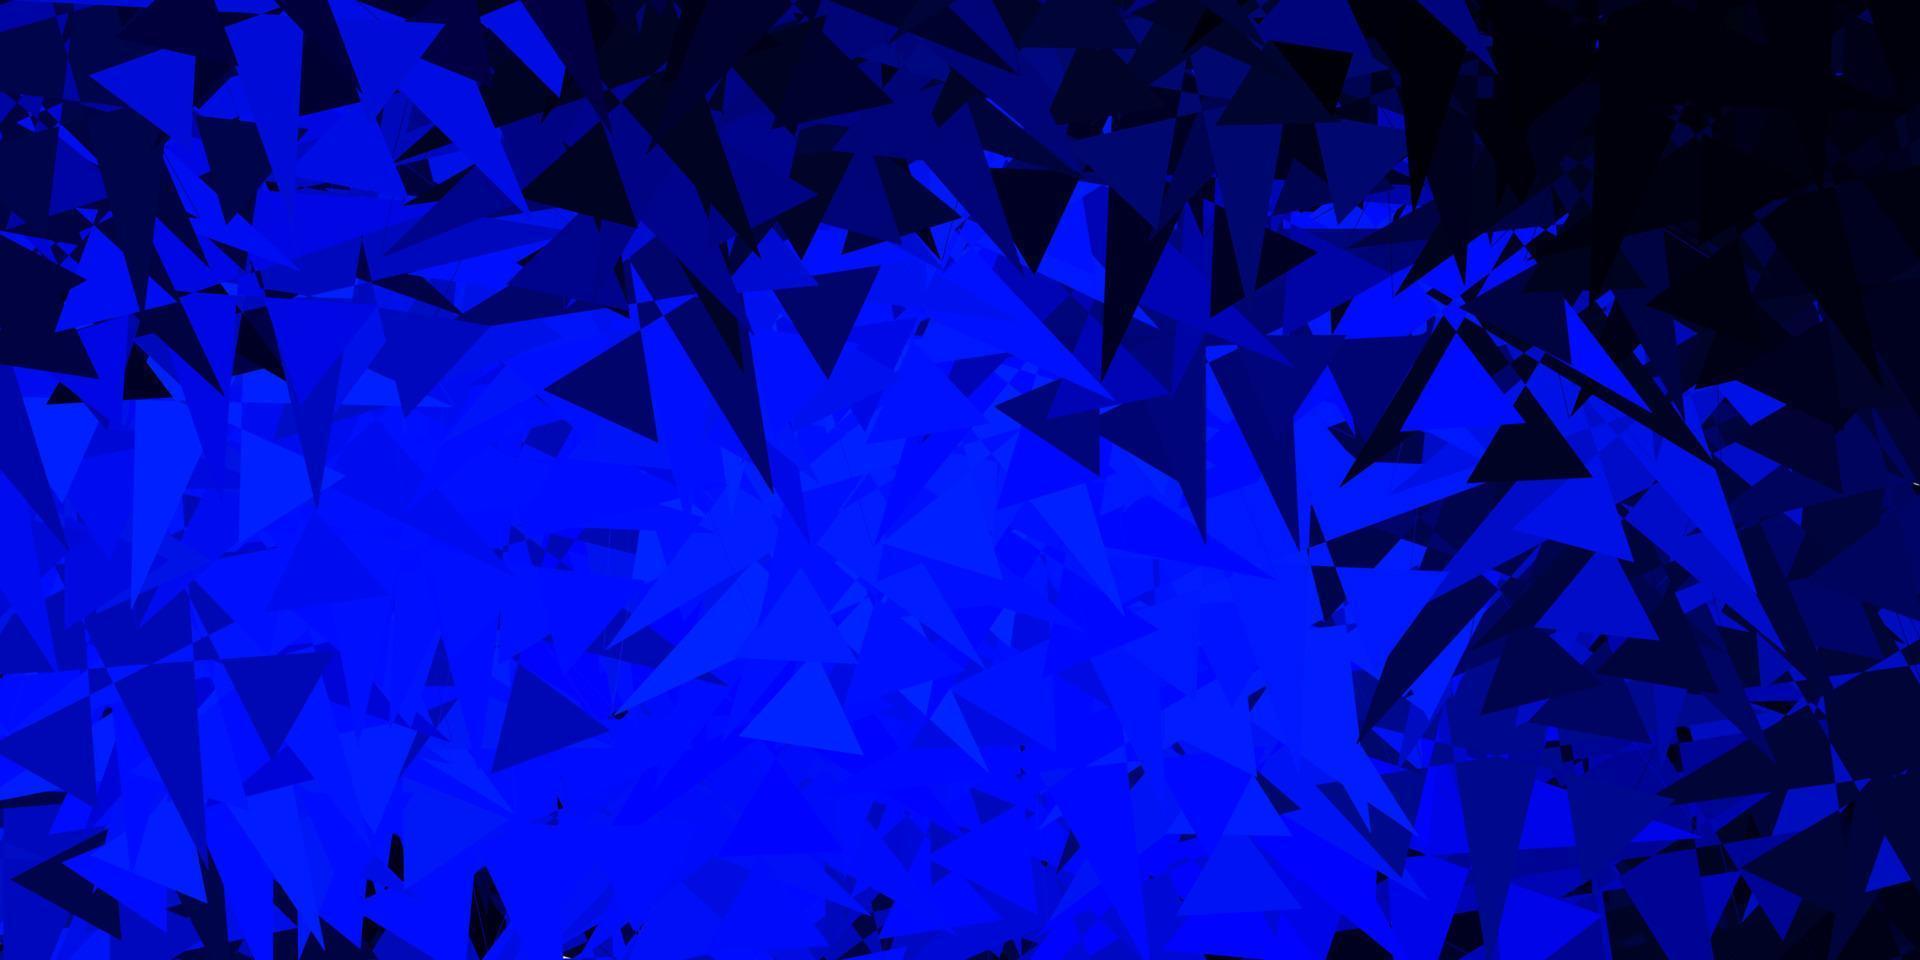 patrón de vector azul oscuro con formas abstractas.